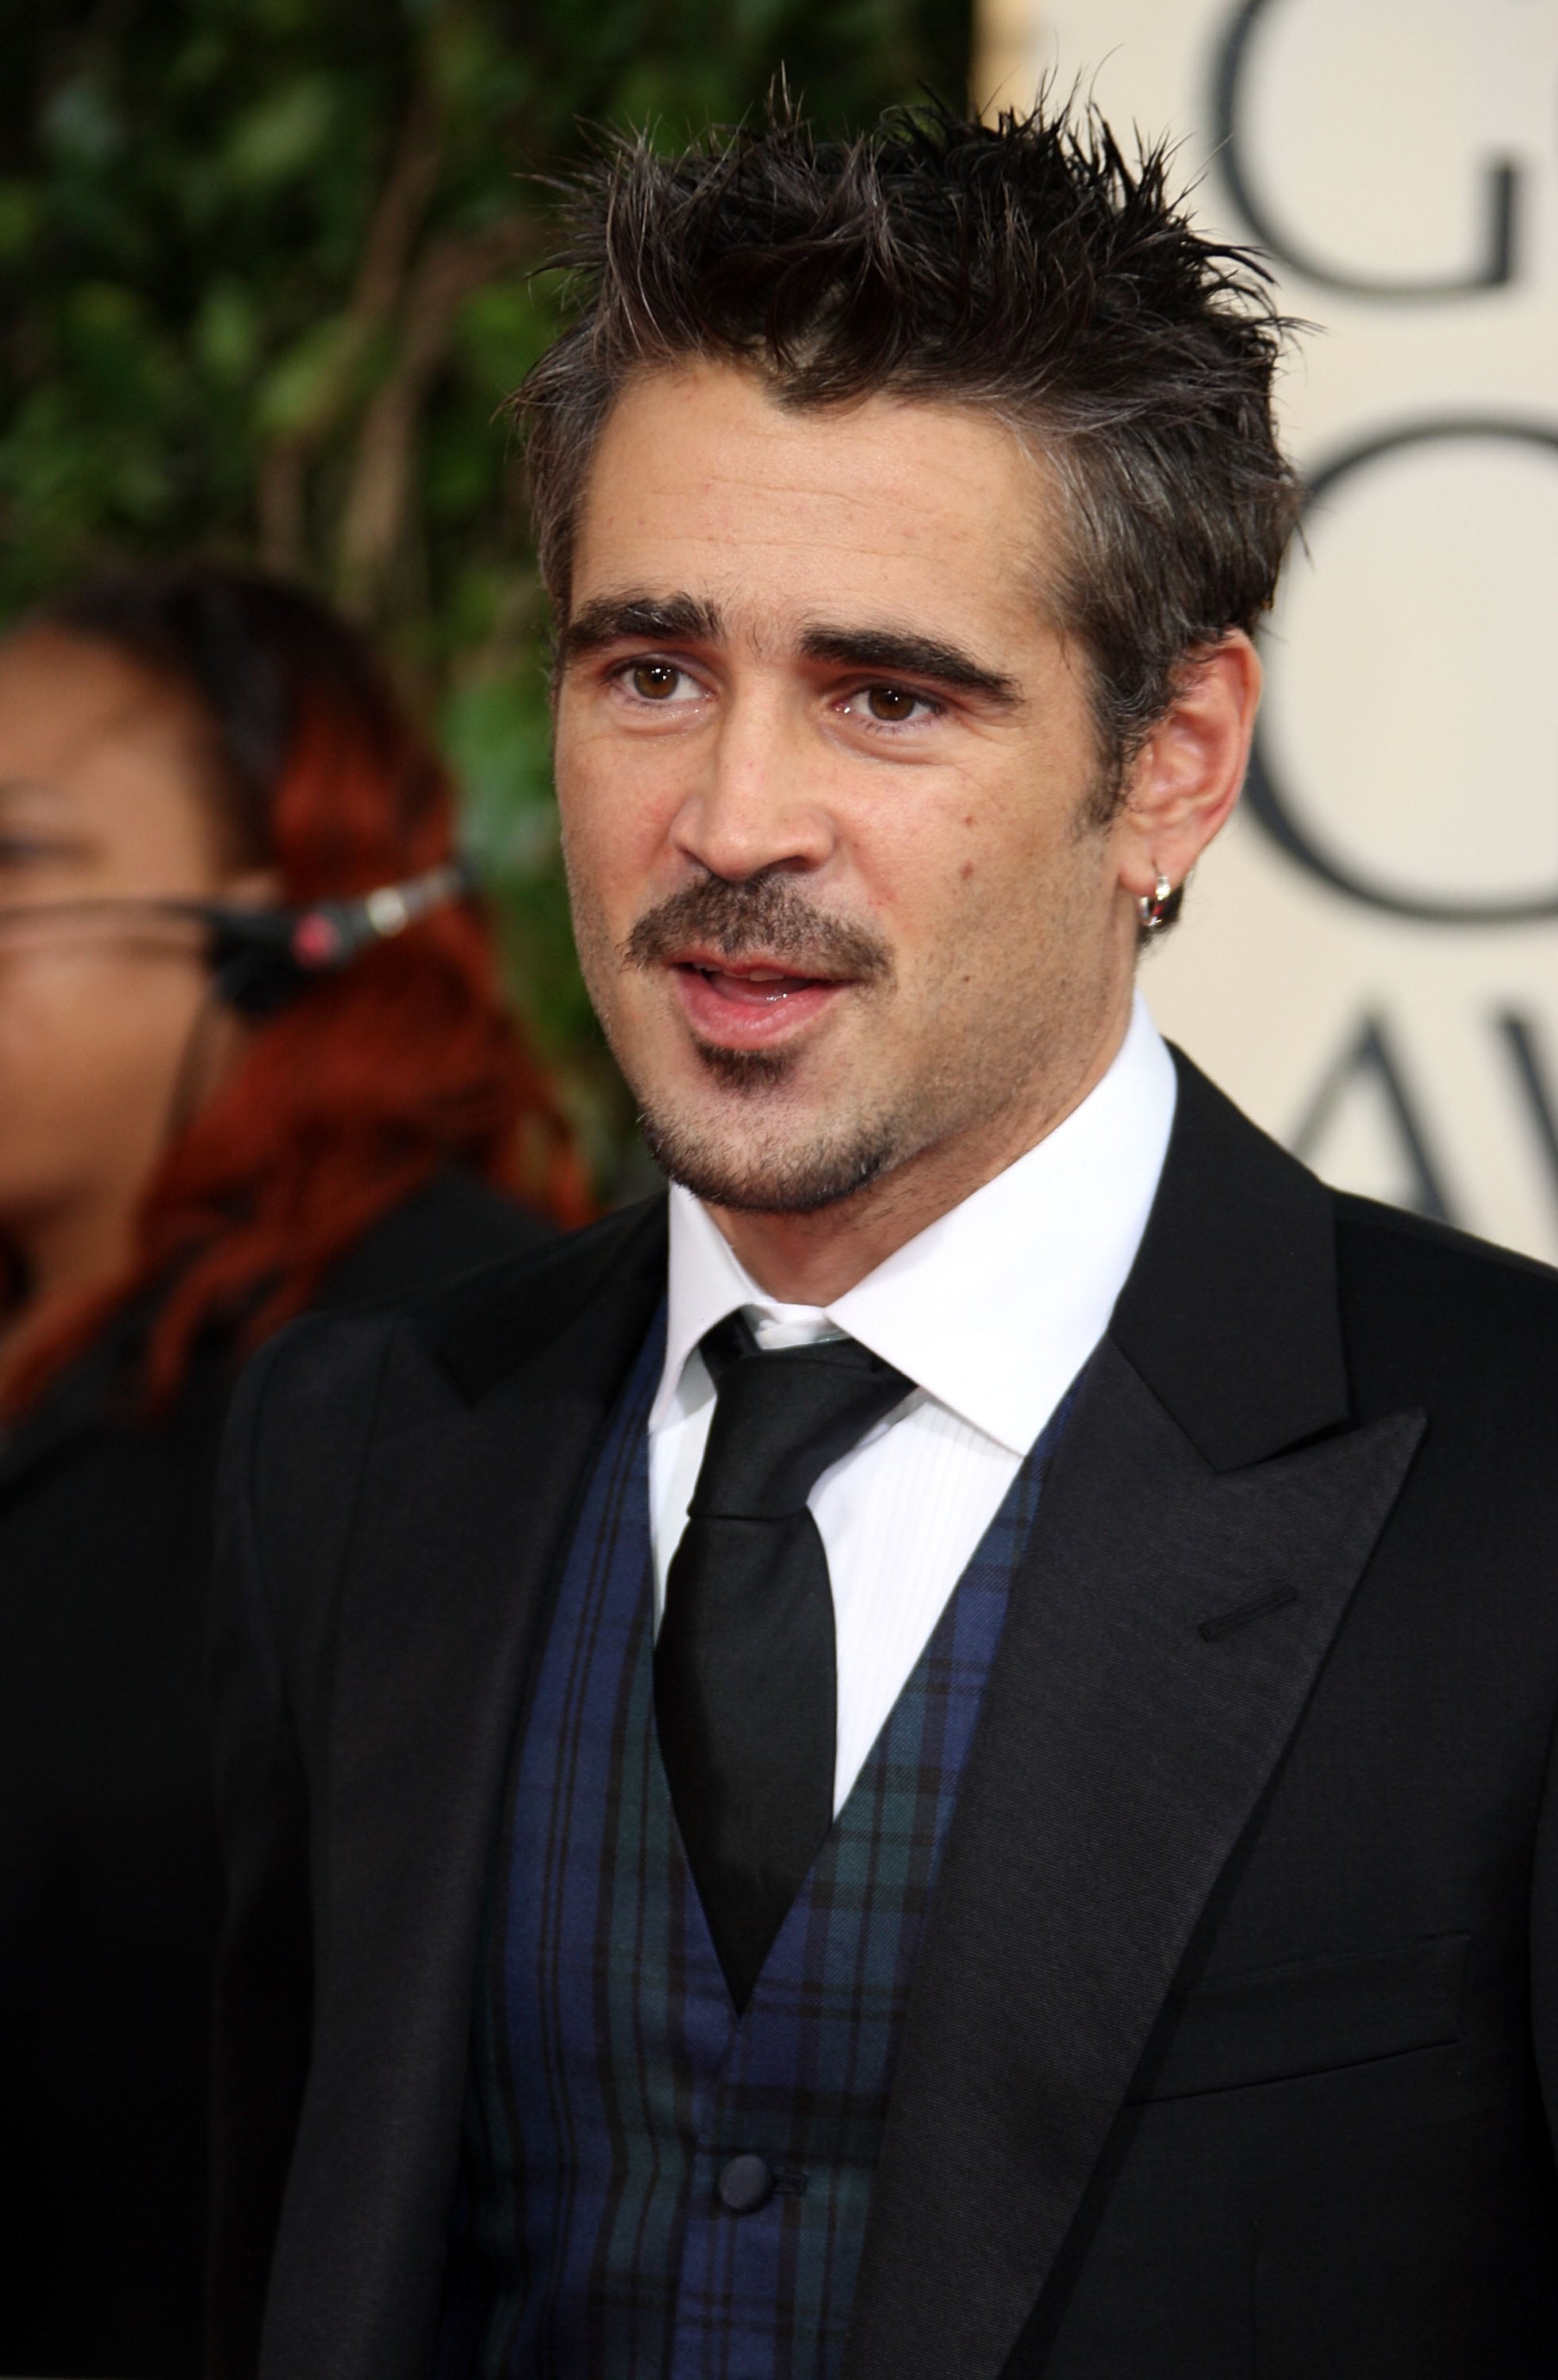 Photos of Men At 2009 Golden Globe Awards Including Brad Pitt, Leonardo ...